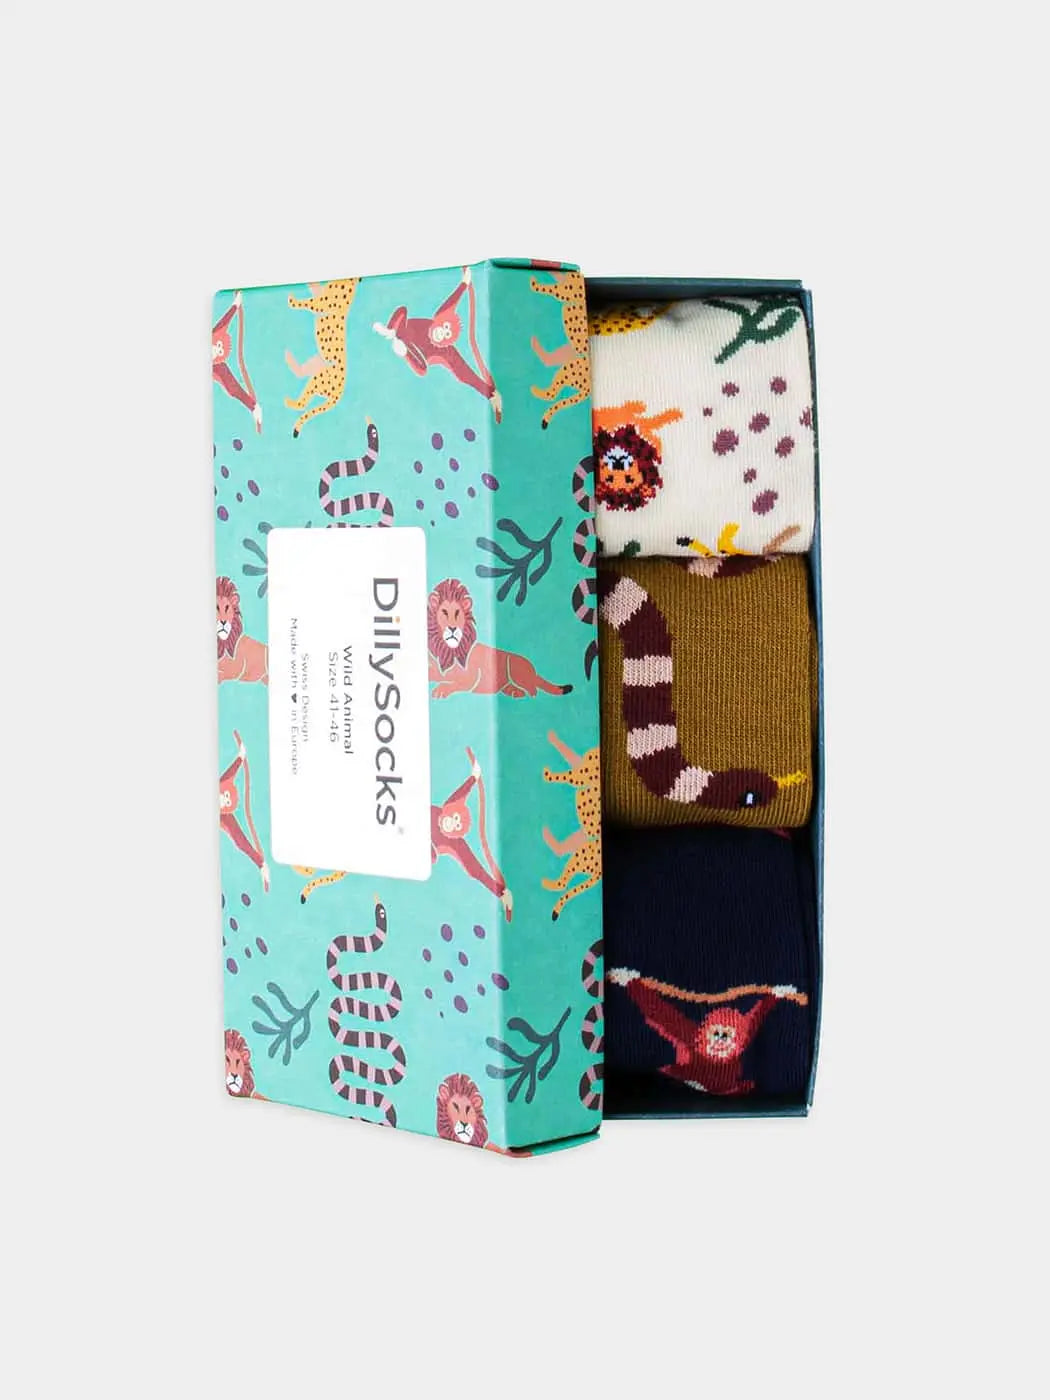 - Socken-Geschenkbox in Blau Weiss Grün mit Tier Motiv/Muster von DillySocks